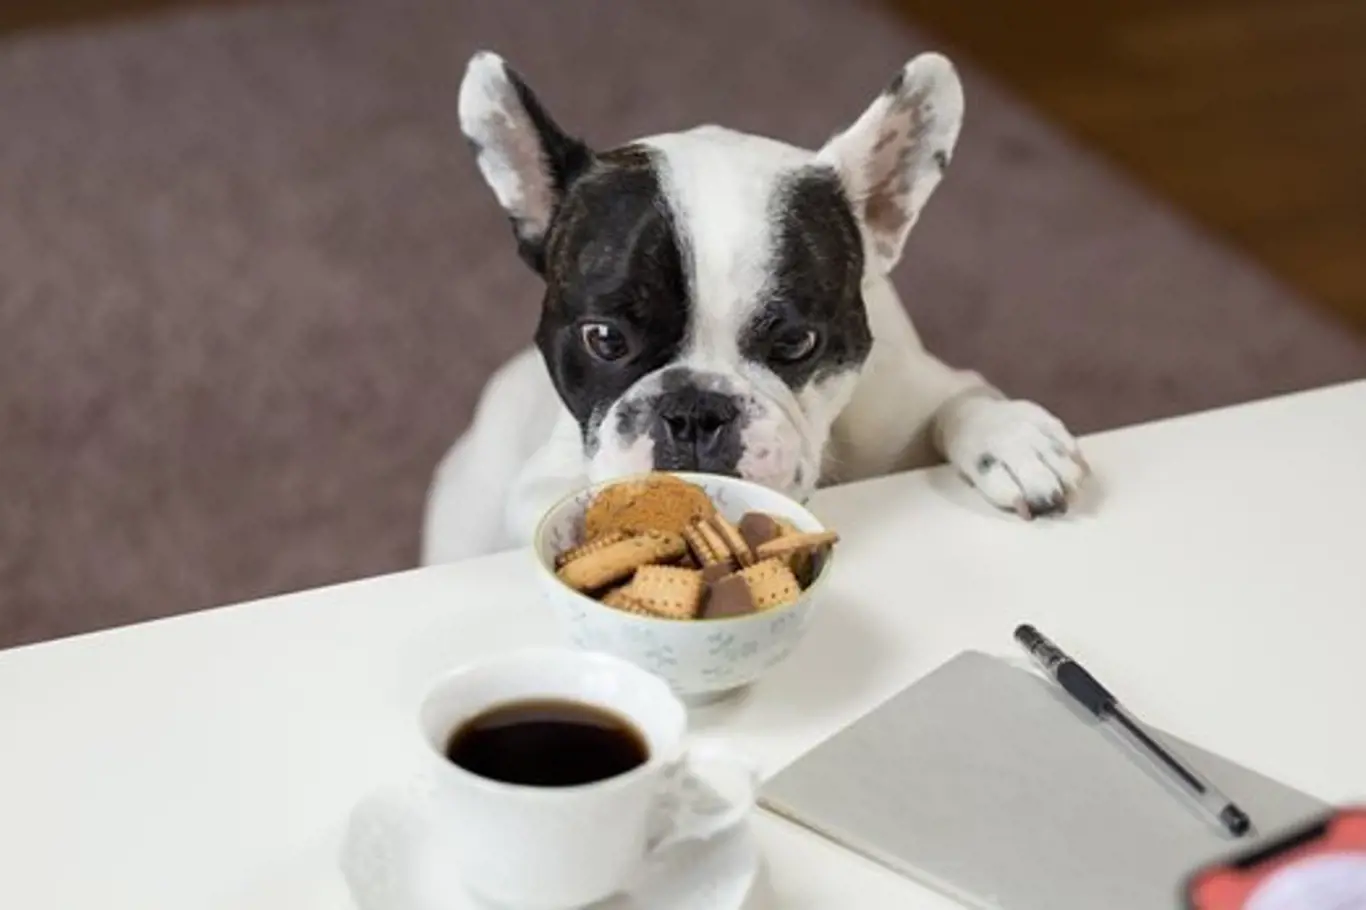 Kofeinové nápoje a sladkosti určené pro lidi mohou psům vážně ublížit.